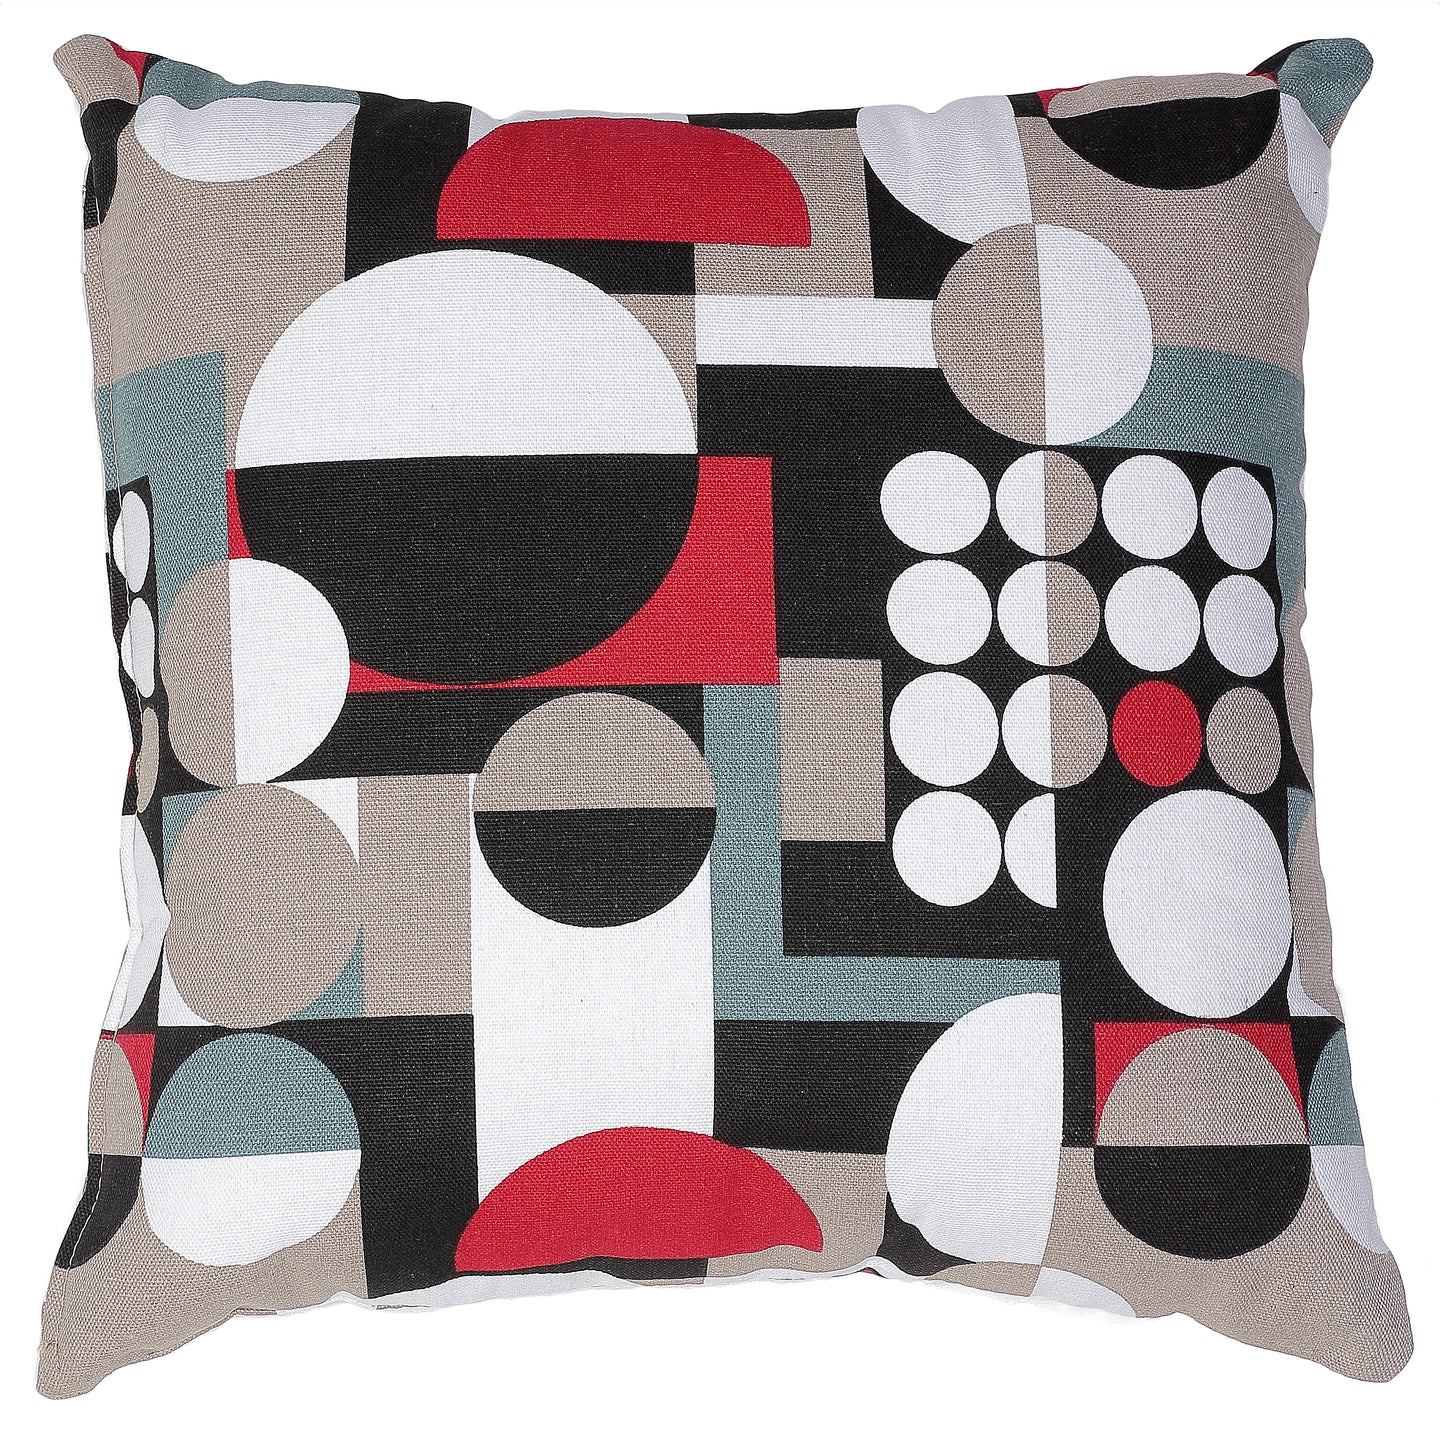 Cortesi Home Mondo Decorative Square Accent Pillow, Geometric Print